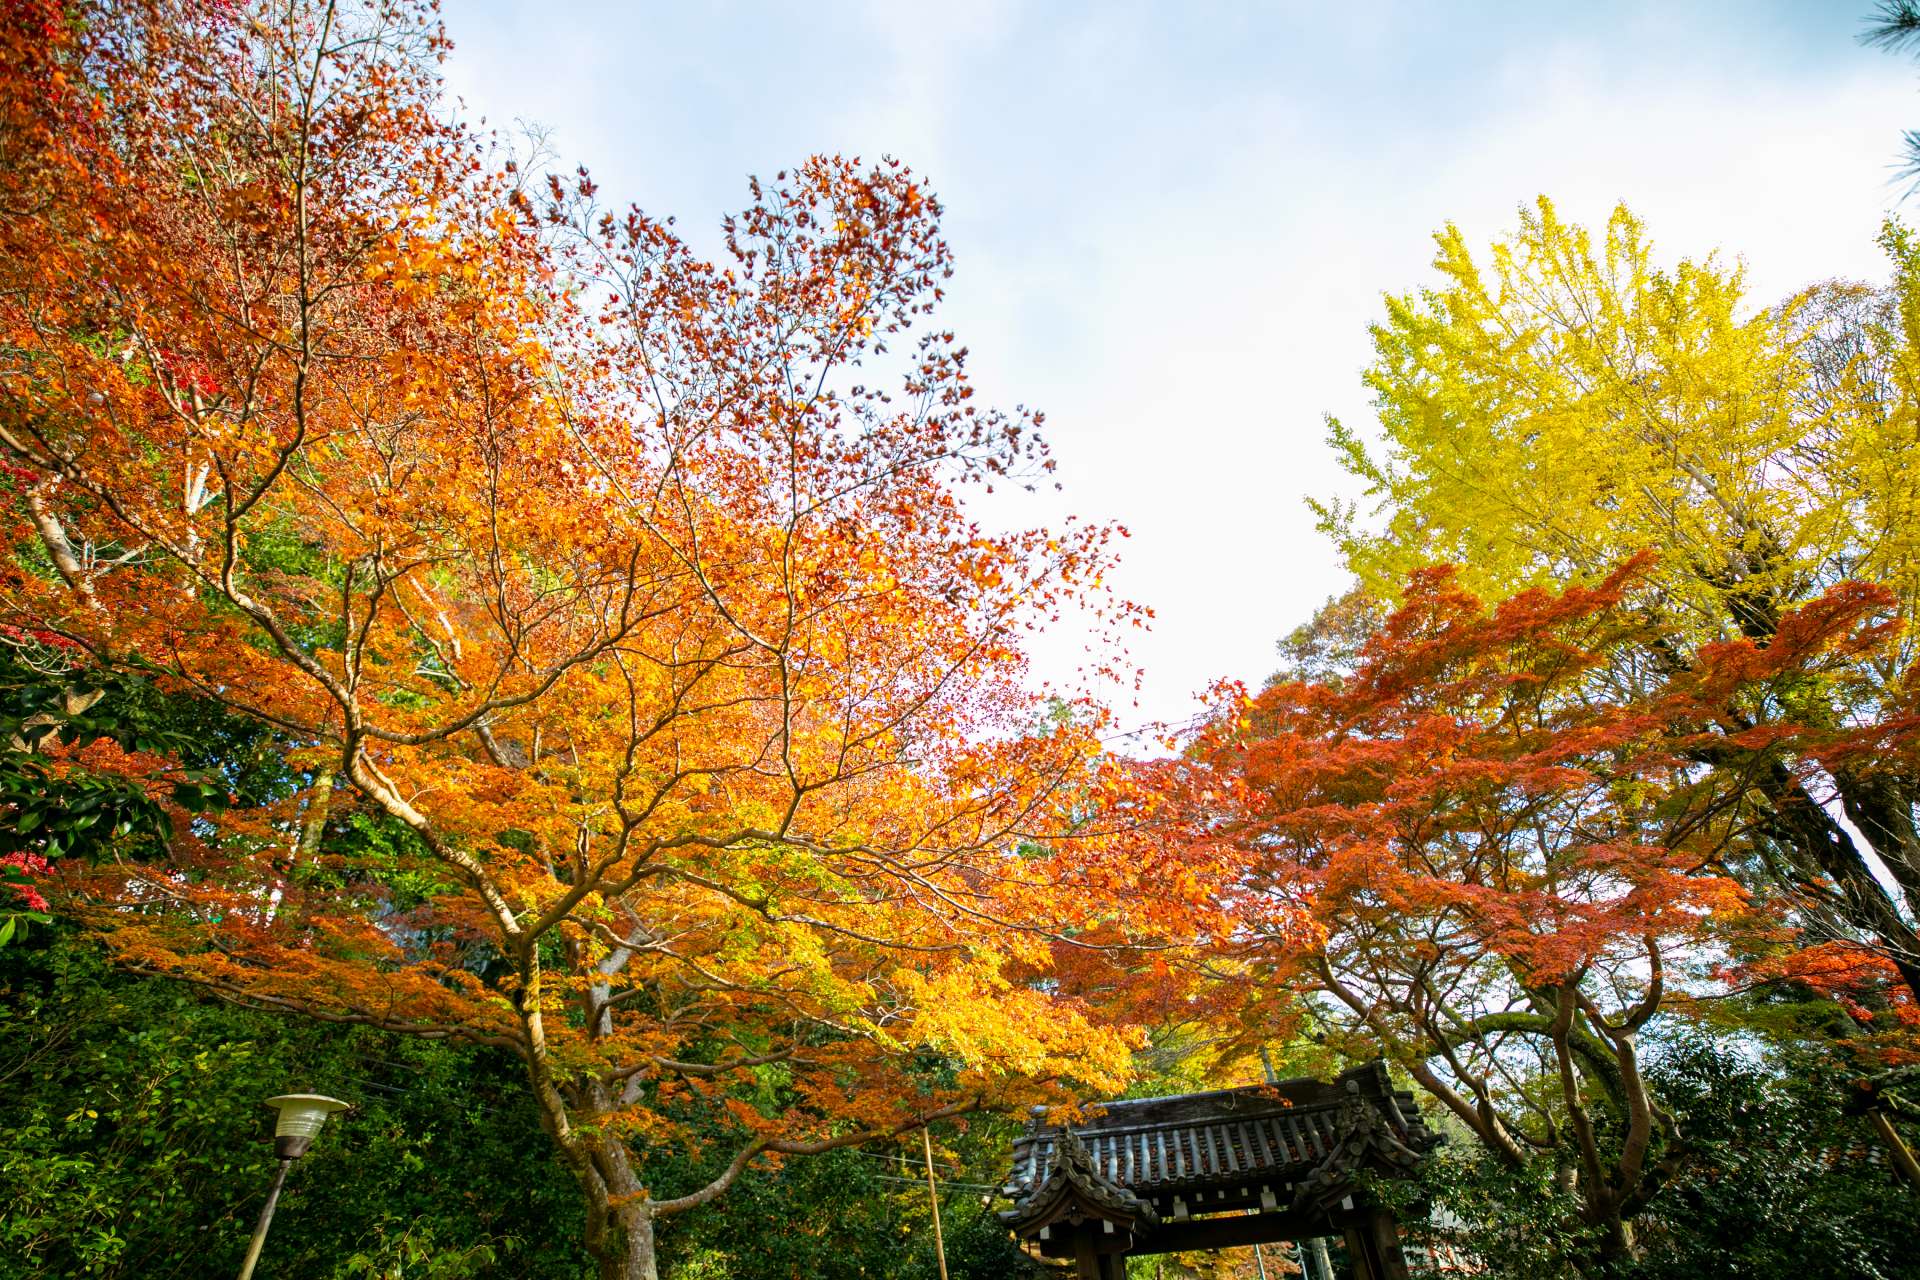 吉野の豊かで厳しい自然の中、日本独自の宗教、修験道の行は今も絶えることなく続けられている